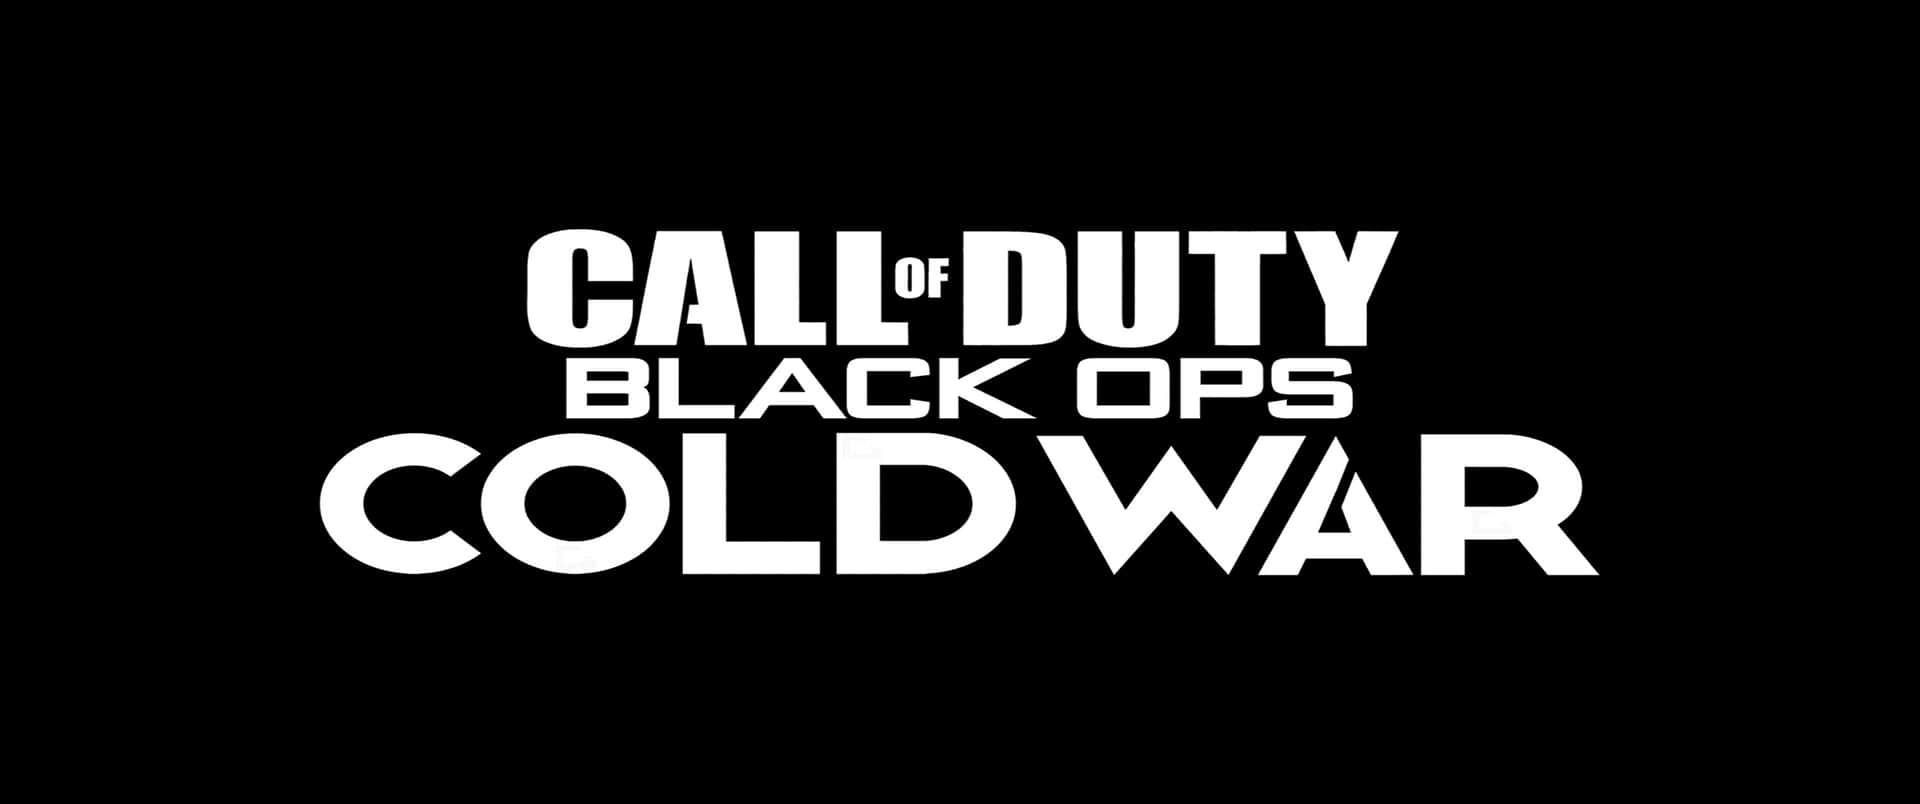 Sfondominimalista Di Call Of Duty Black Ops Cold War In 3440x1440p.